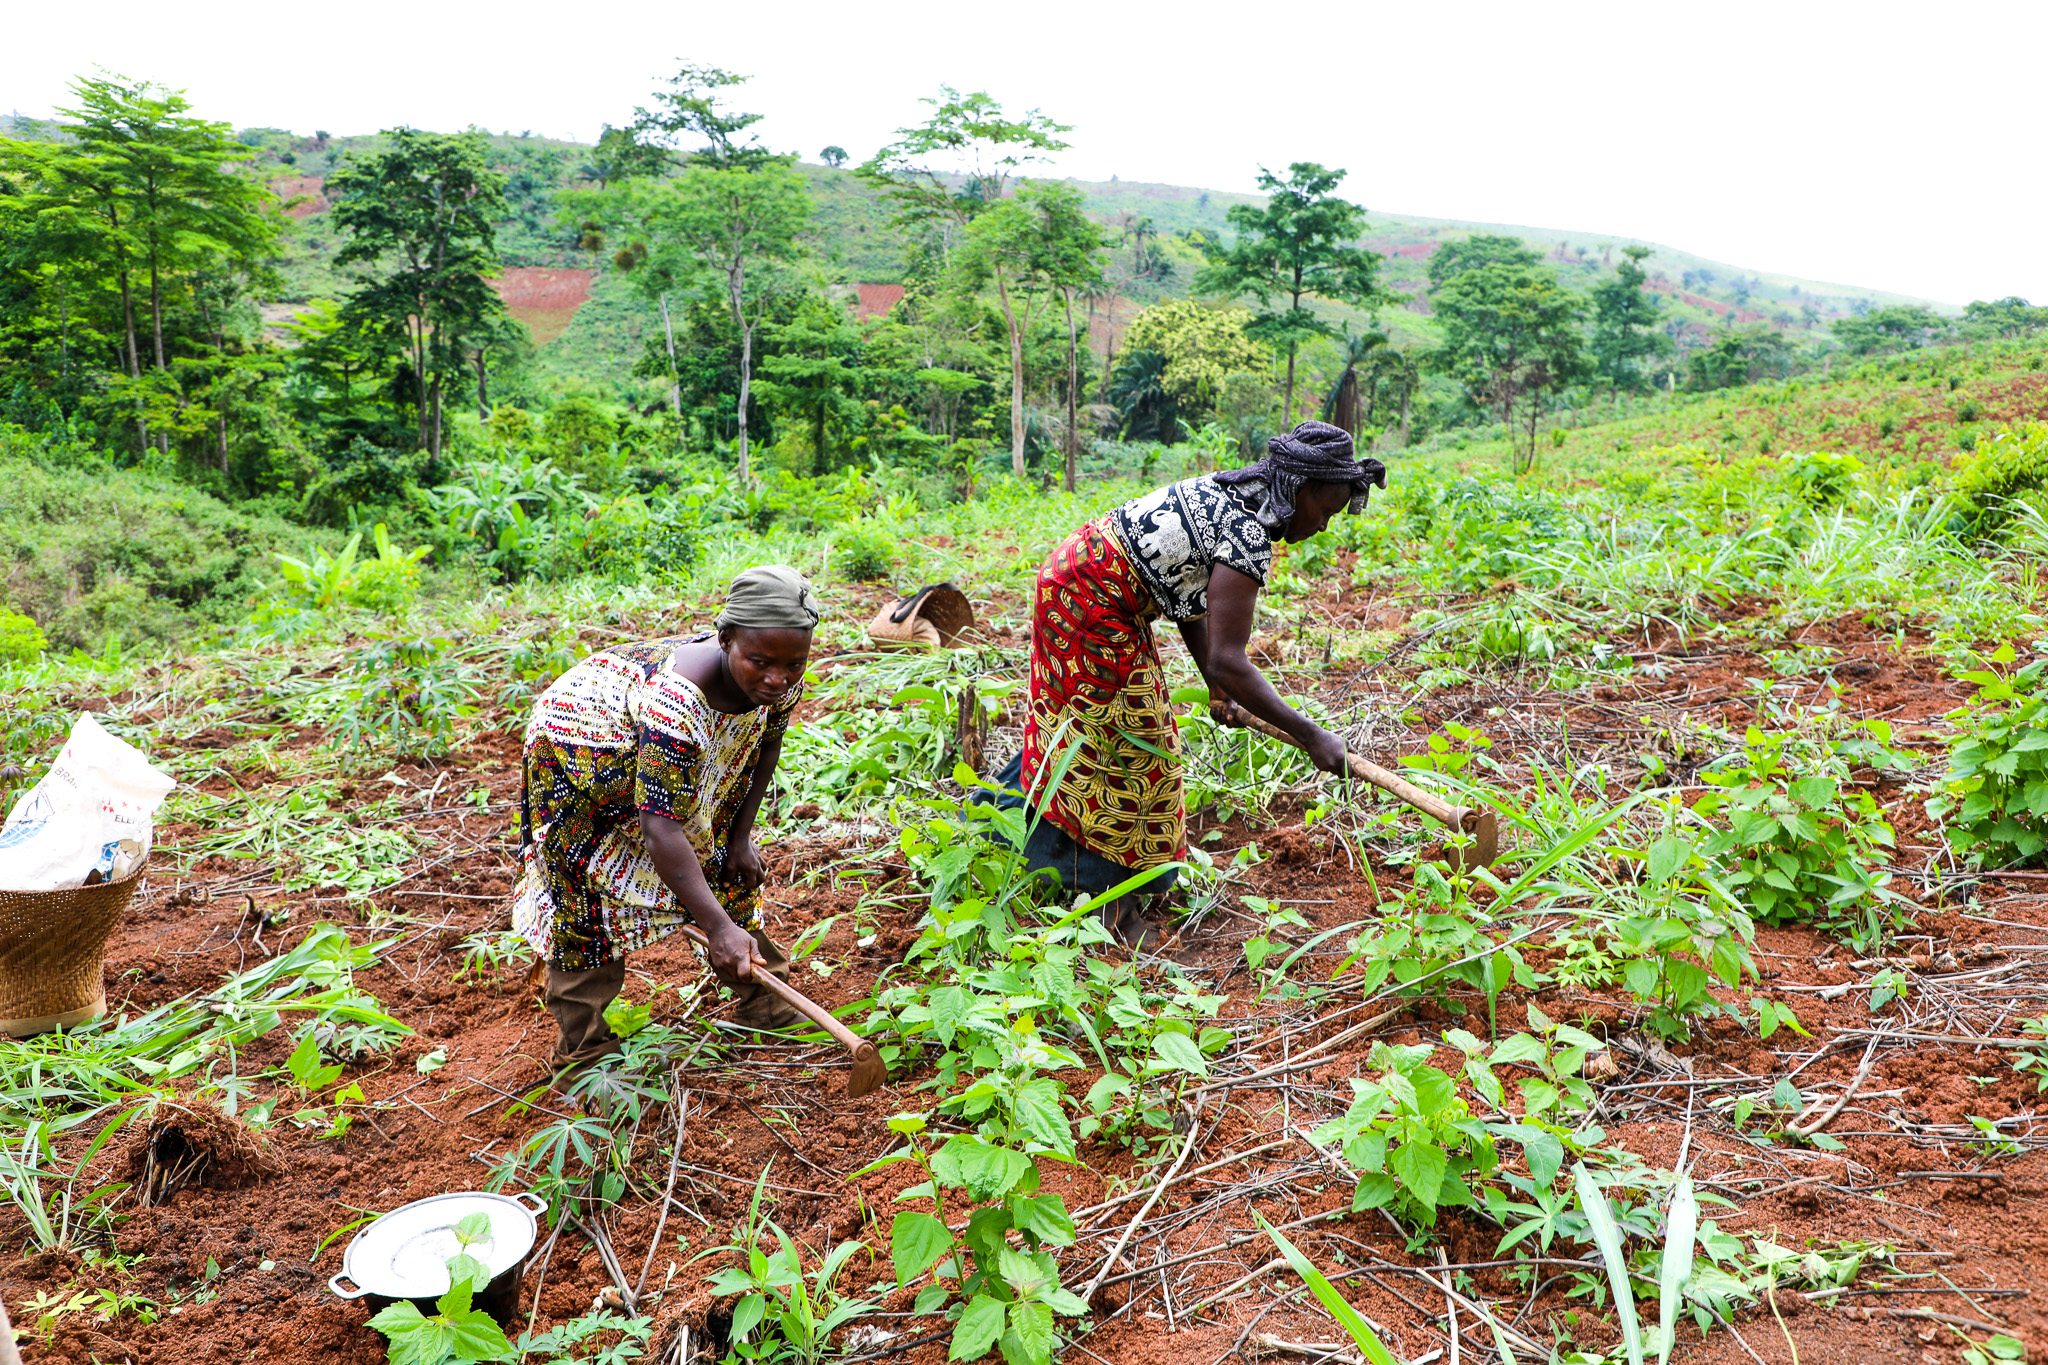 Les femmes maraichères de Kwakwa travaillent la terre et continuent d'utiliser des outils précaires. Photos : ONU Femmes / Marina Mestres Segarra.